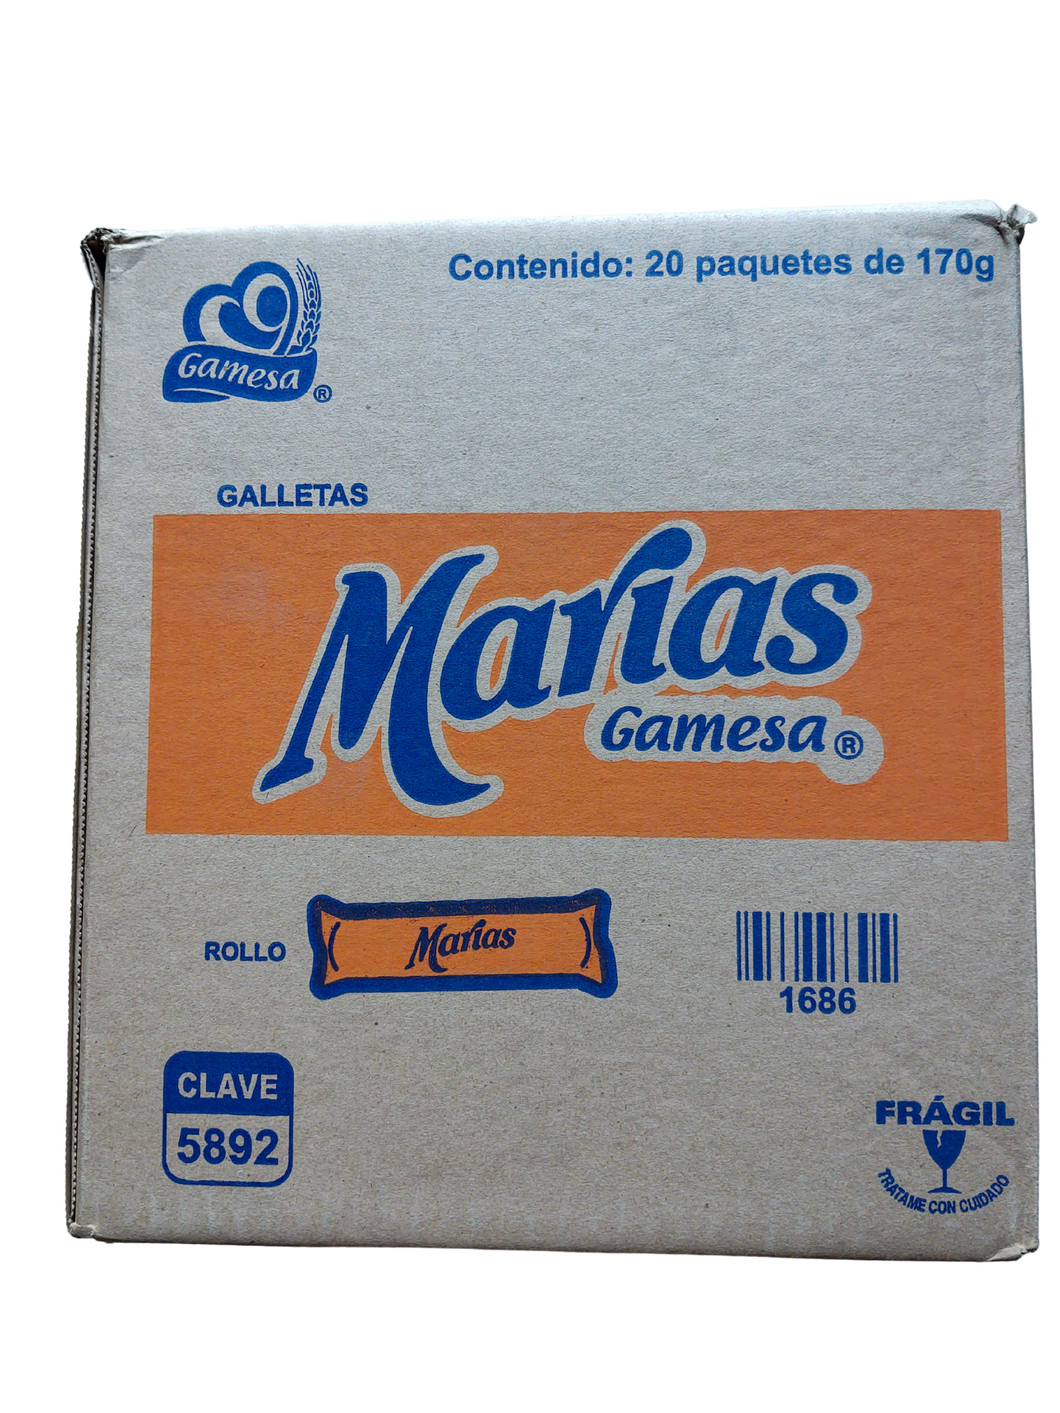 Galletas Marias 20/170gr Gamesa